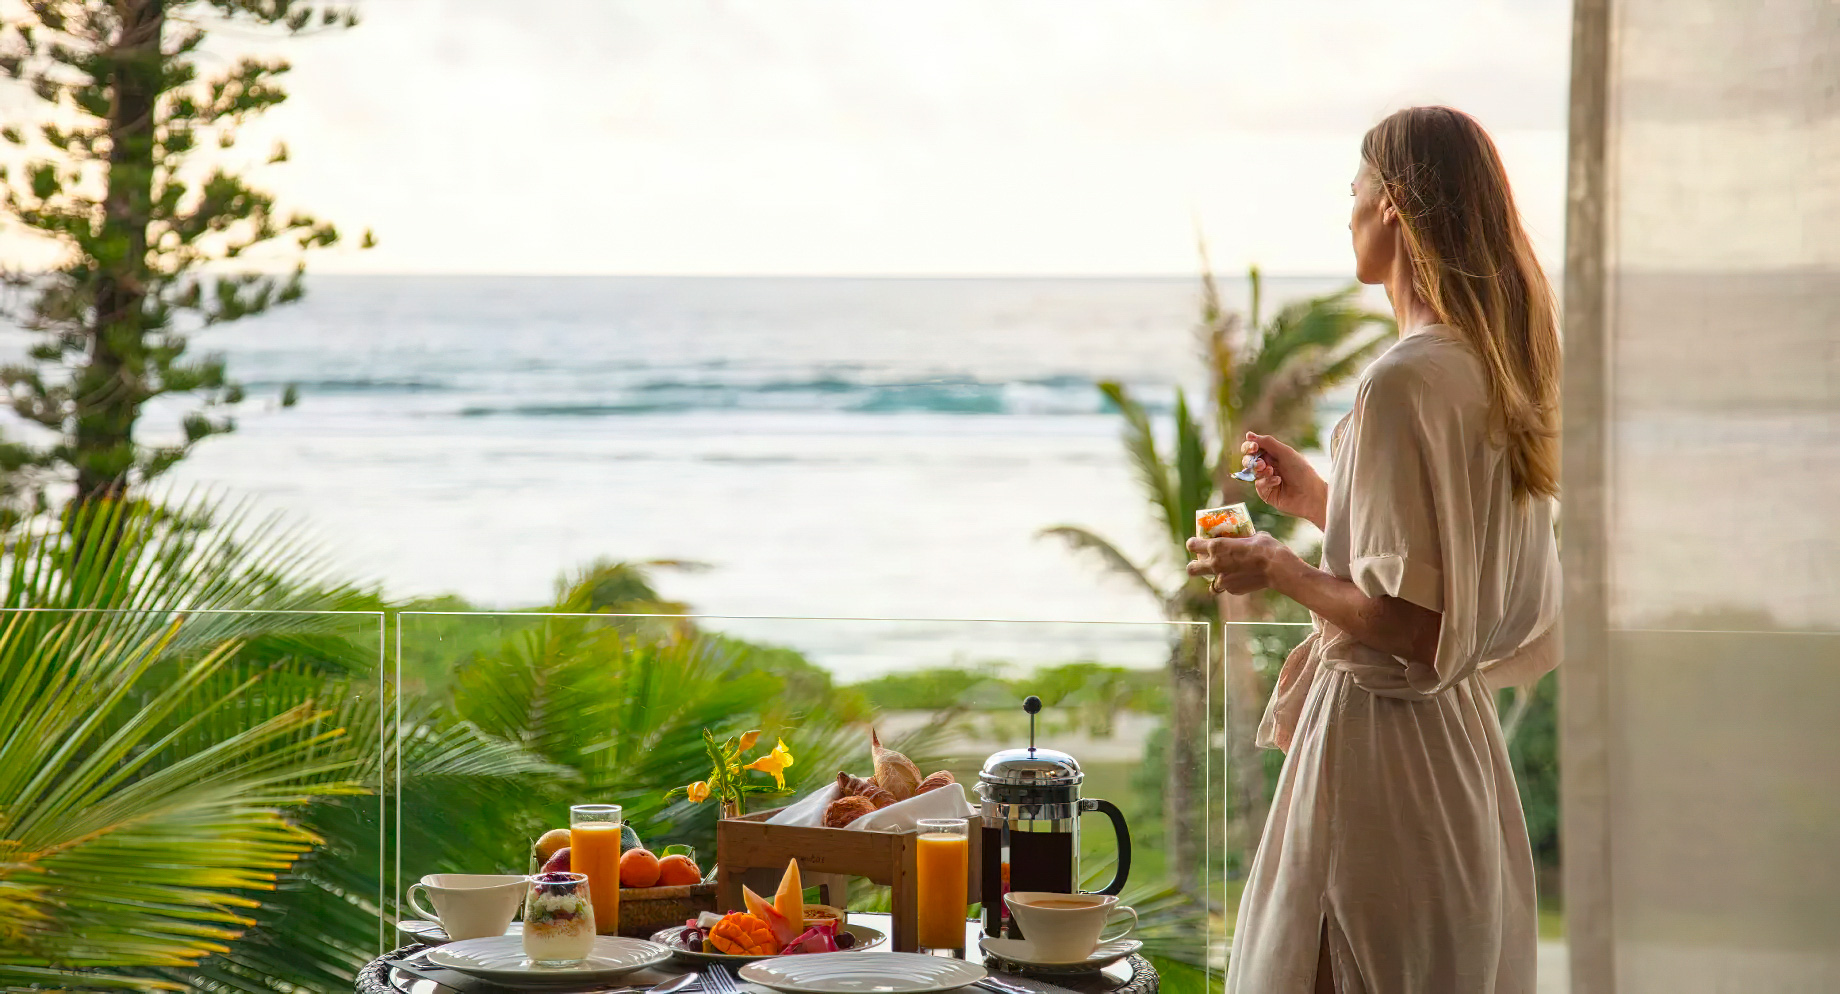 Anantara Iko Mauritius Resort & Villas – Plaine Magnien, Mauritius – In Room Dining